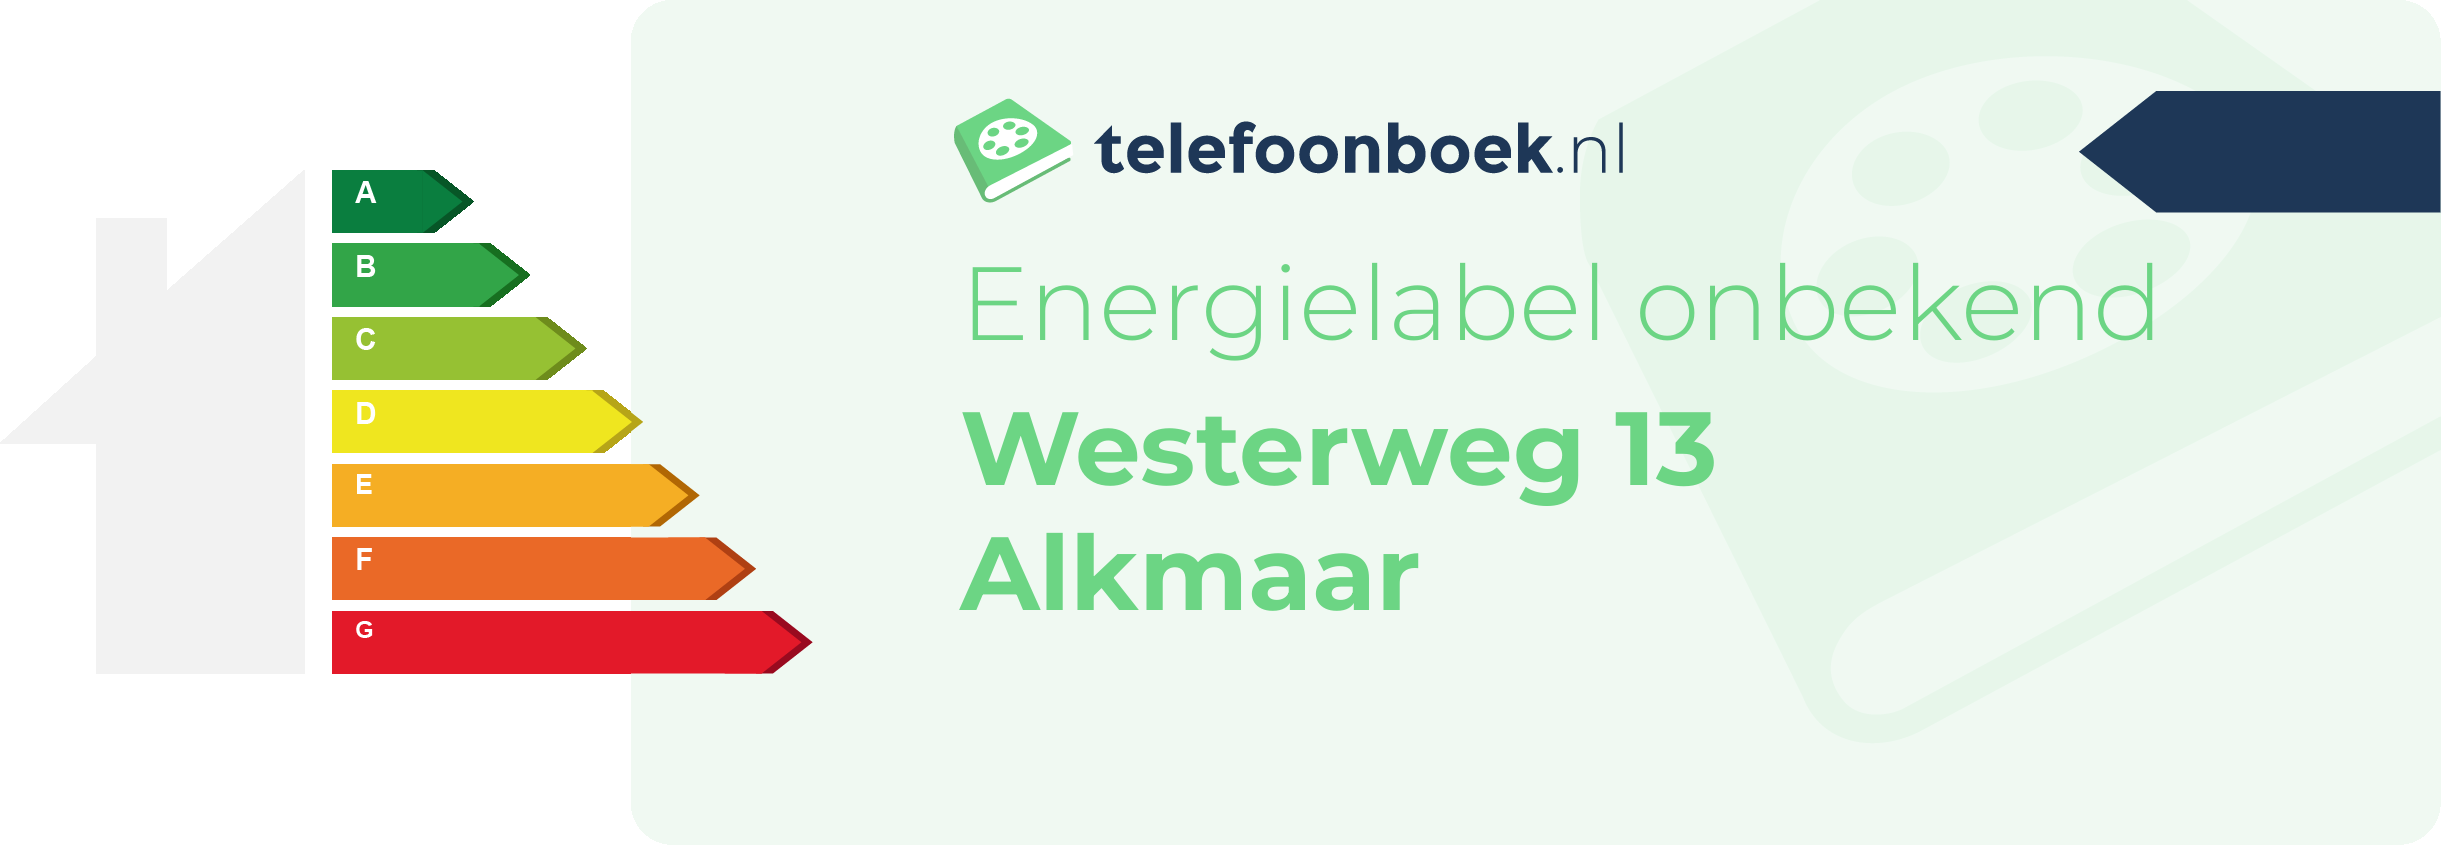 Energielabel Westerweg 13 Alkmaar